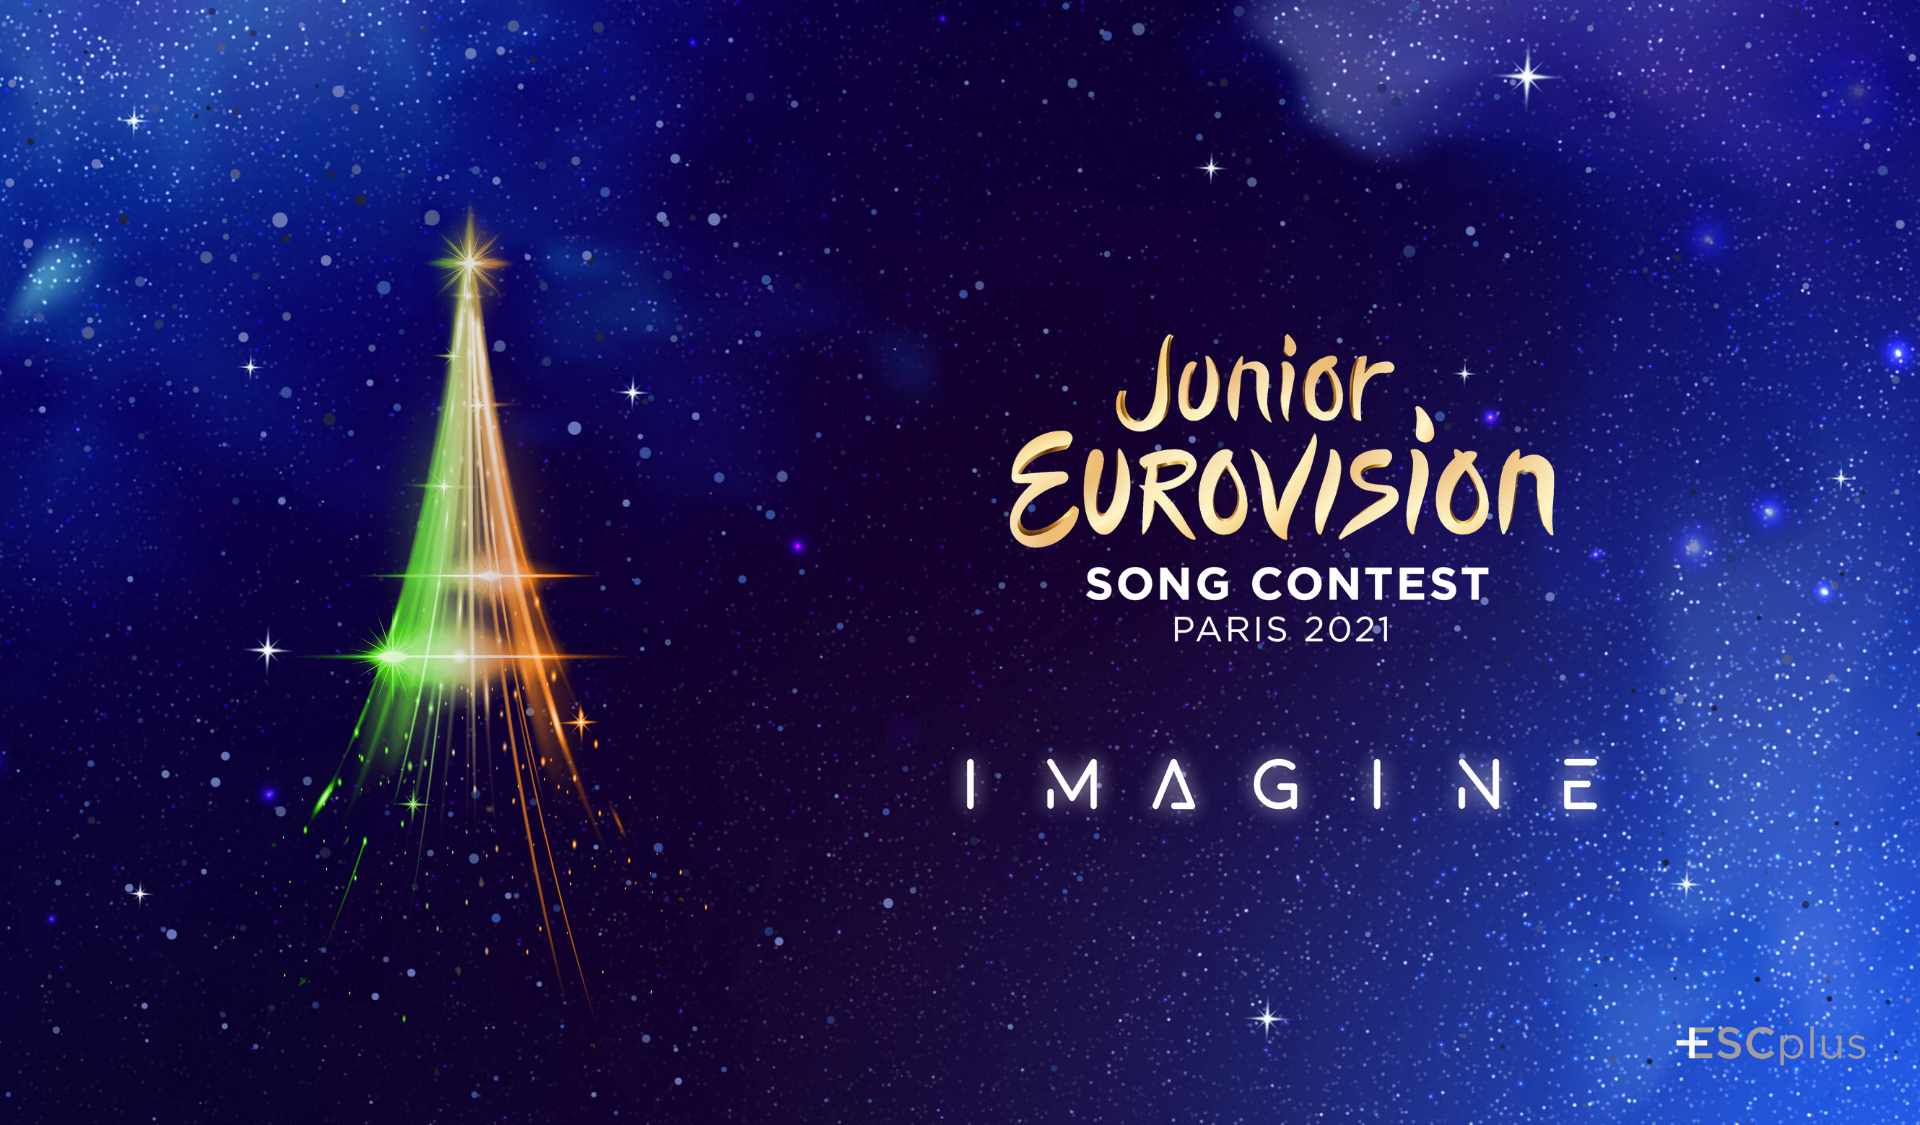 Irlanda comenzará a emitir su Junior Eurovision Eire el próximo domingo, 12 de septiembre